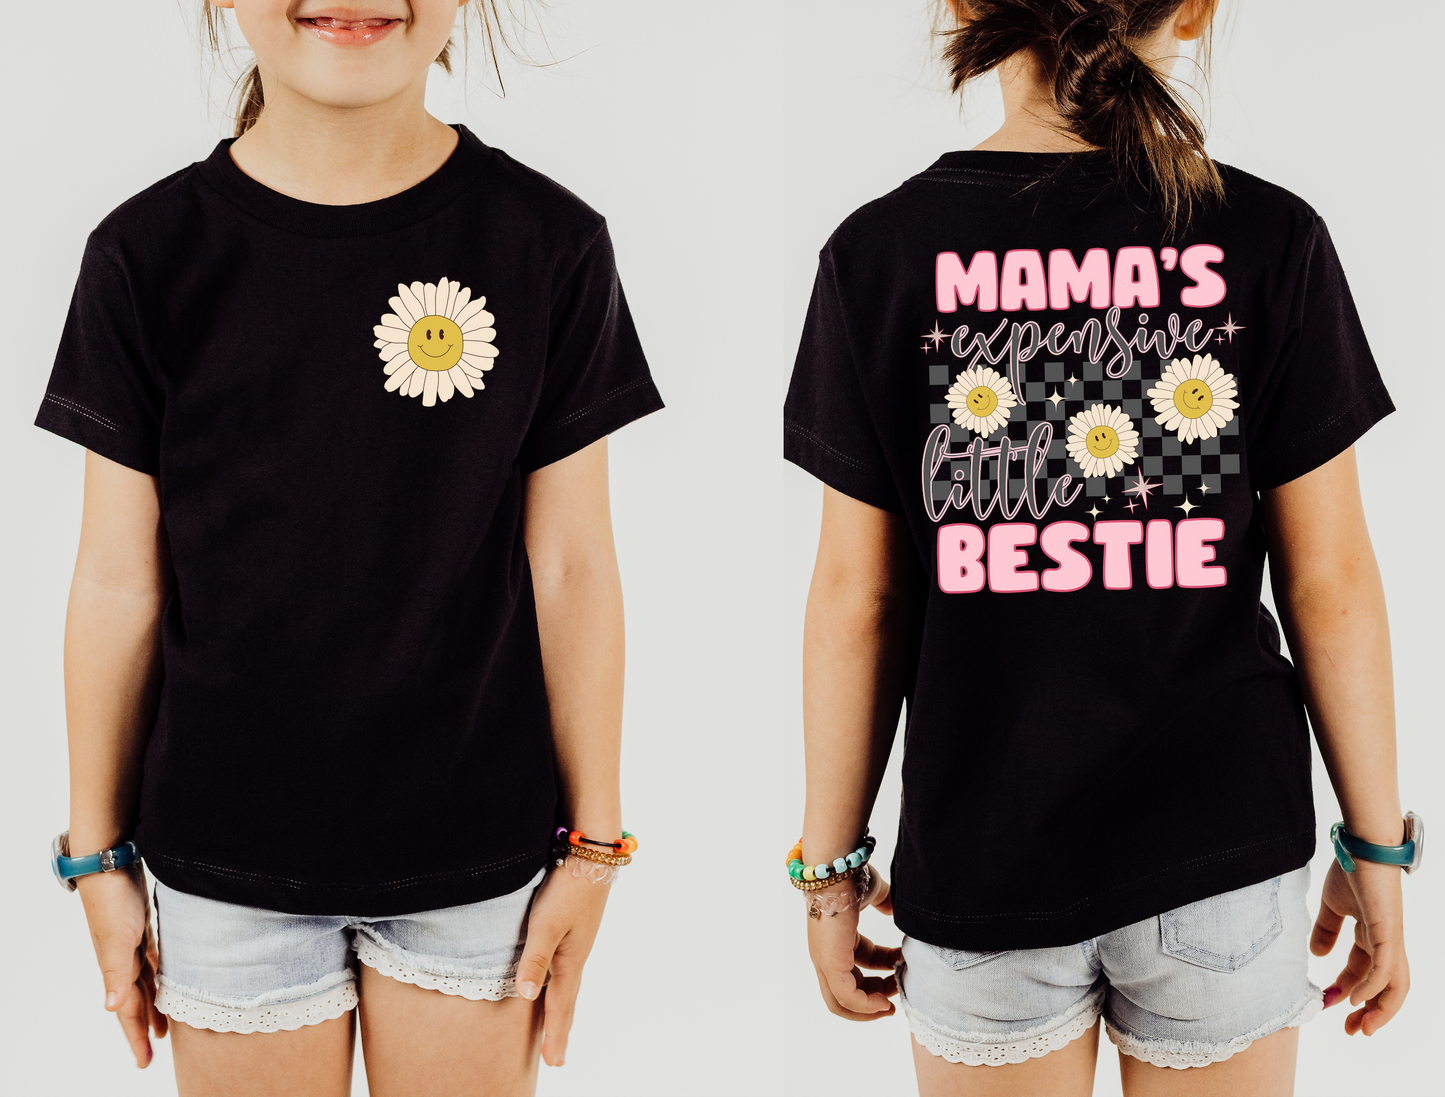 Mamas Expensive Little Bestie Bella Canvas Kids T-Shirt